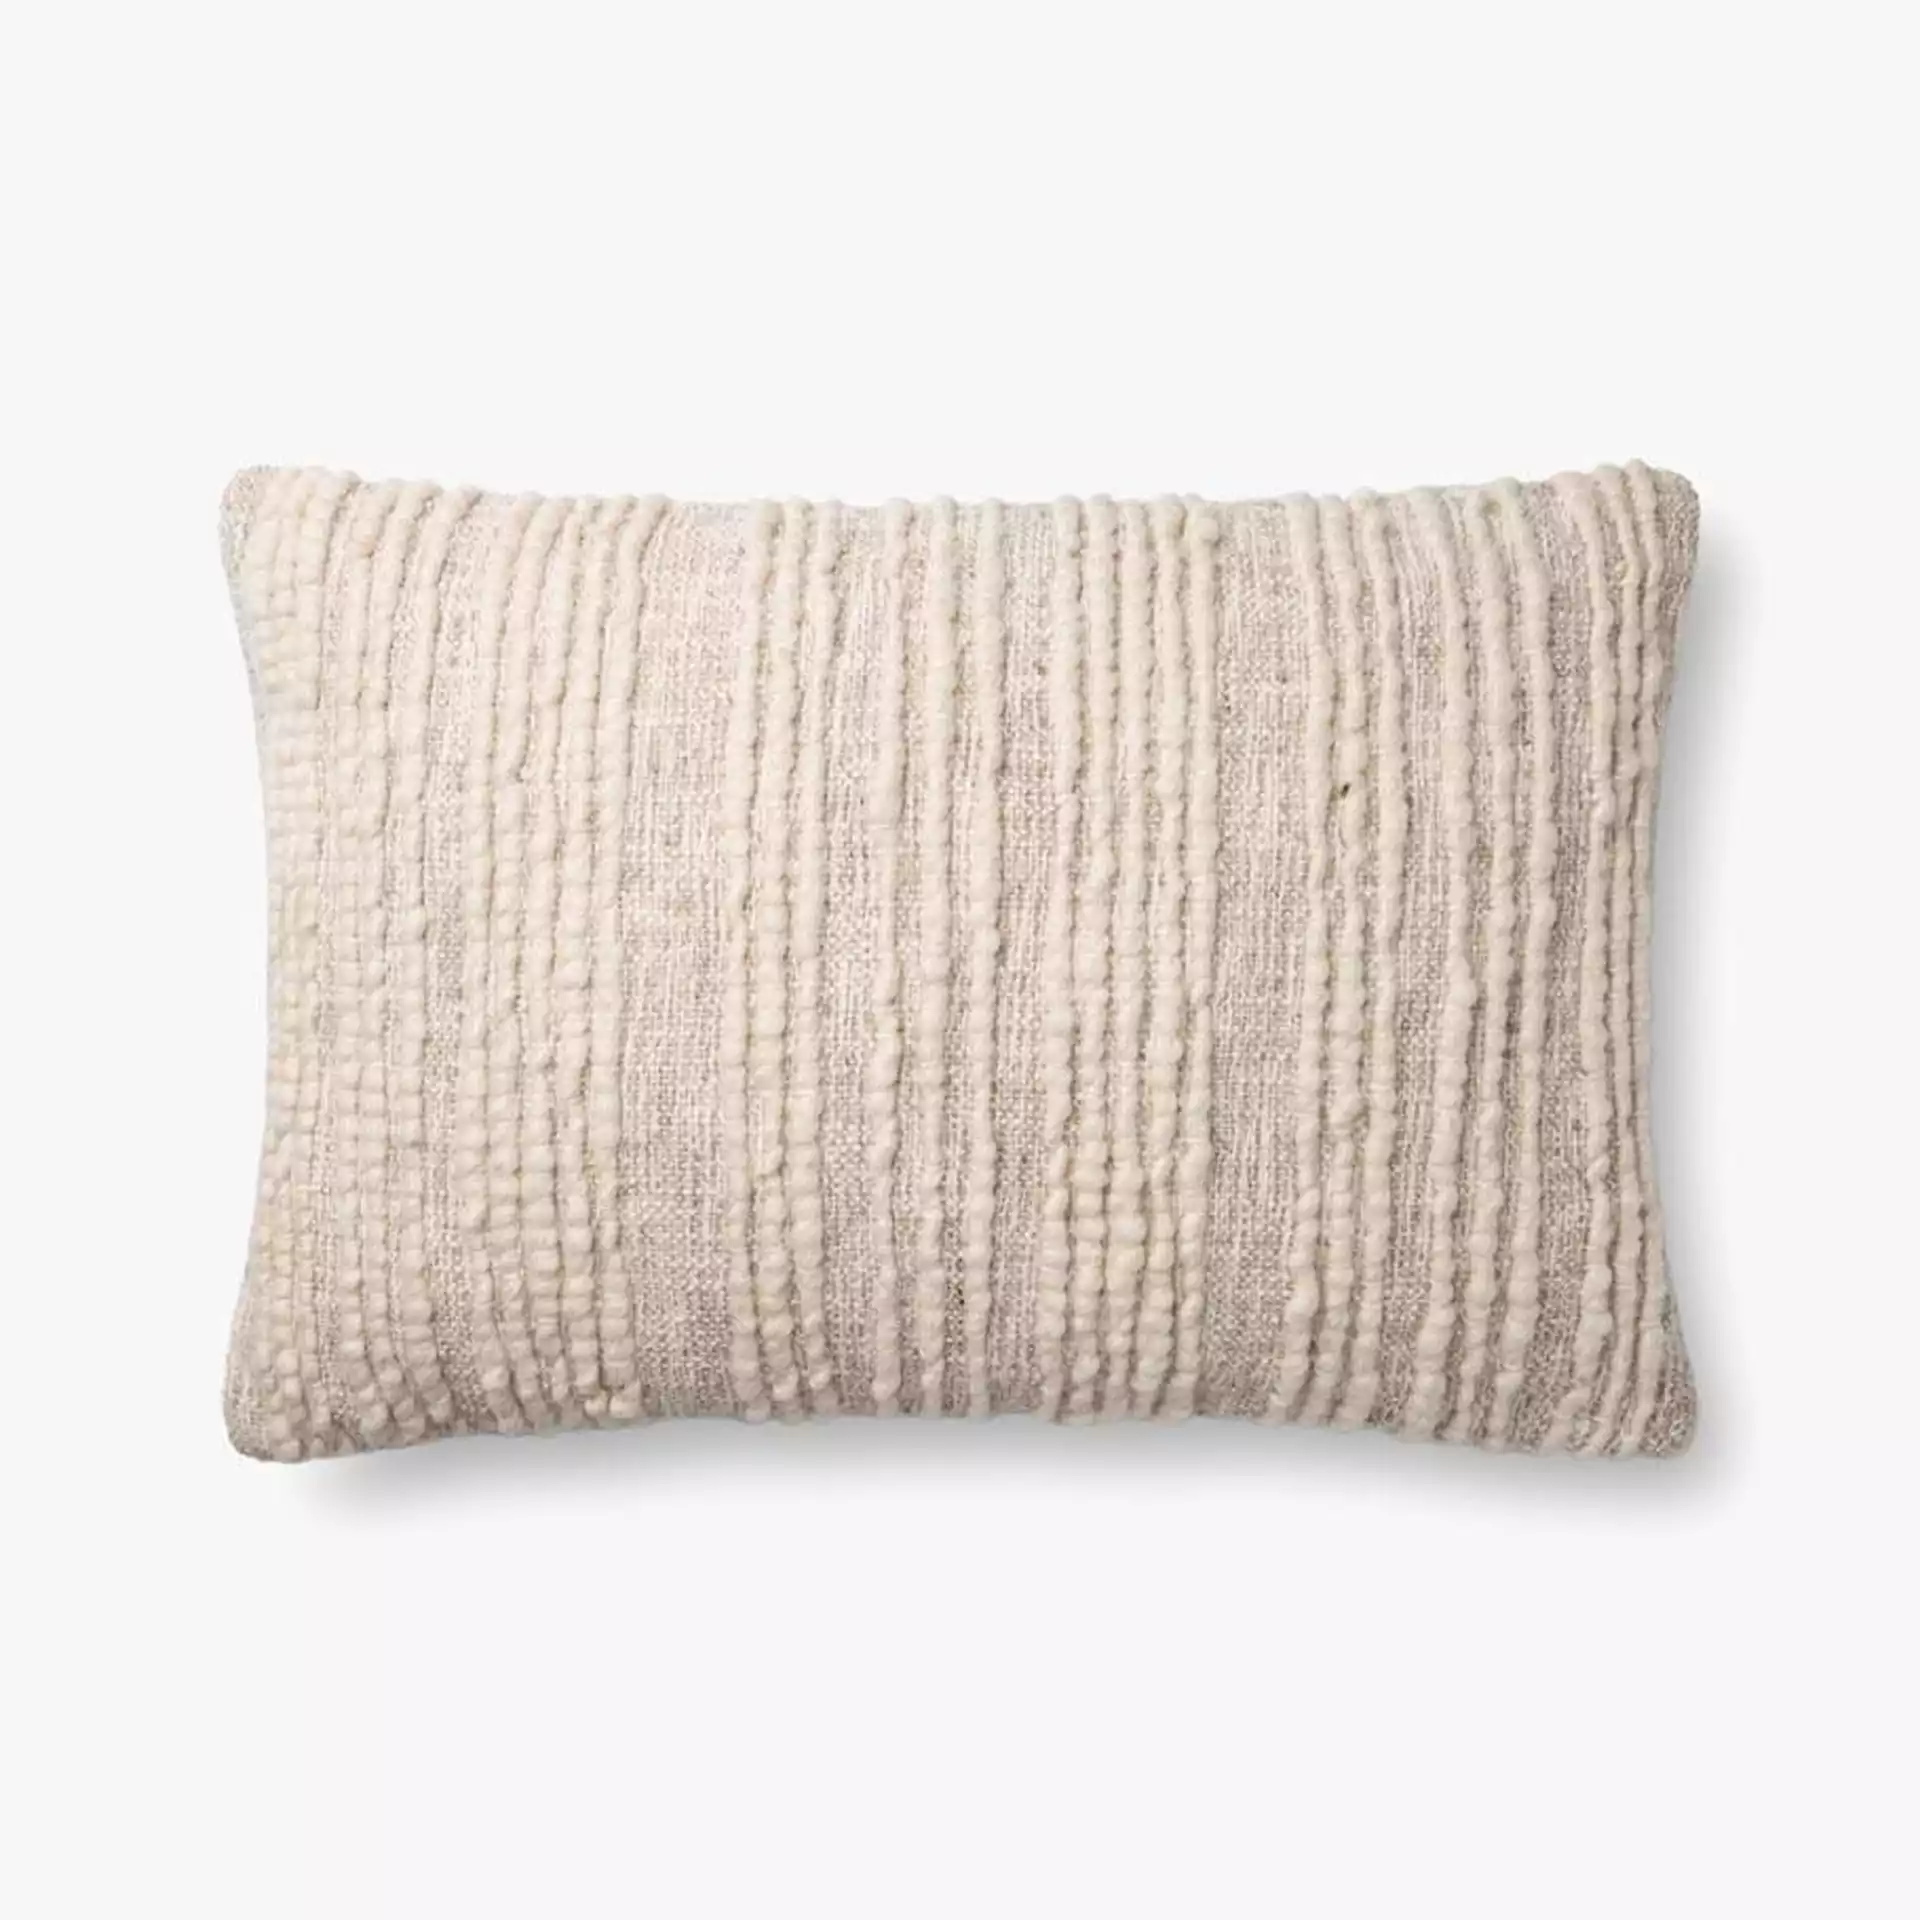 Textured Lumbar Throw Pillow, Beige, 26" x 16"